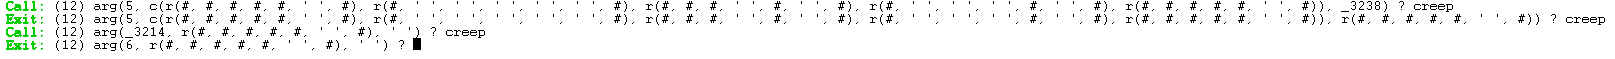 setta nella variabile X2 l'indice del primo spazio (ovvero il valore da cercare)
                                        che viene trovato nella lista LastRow